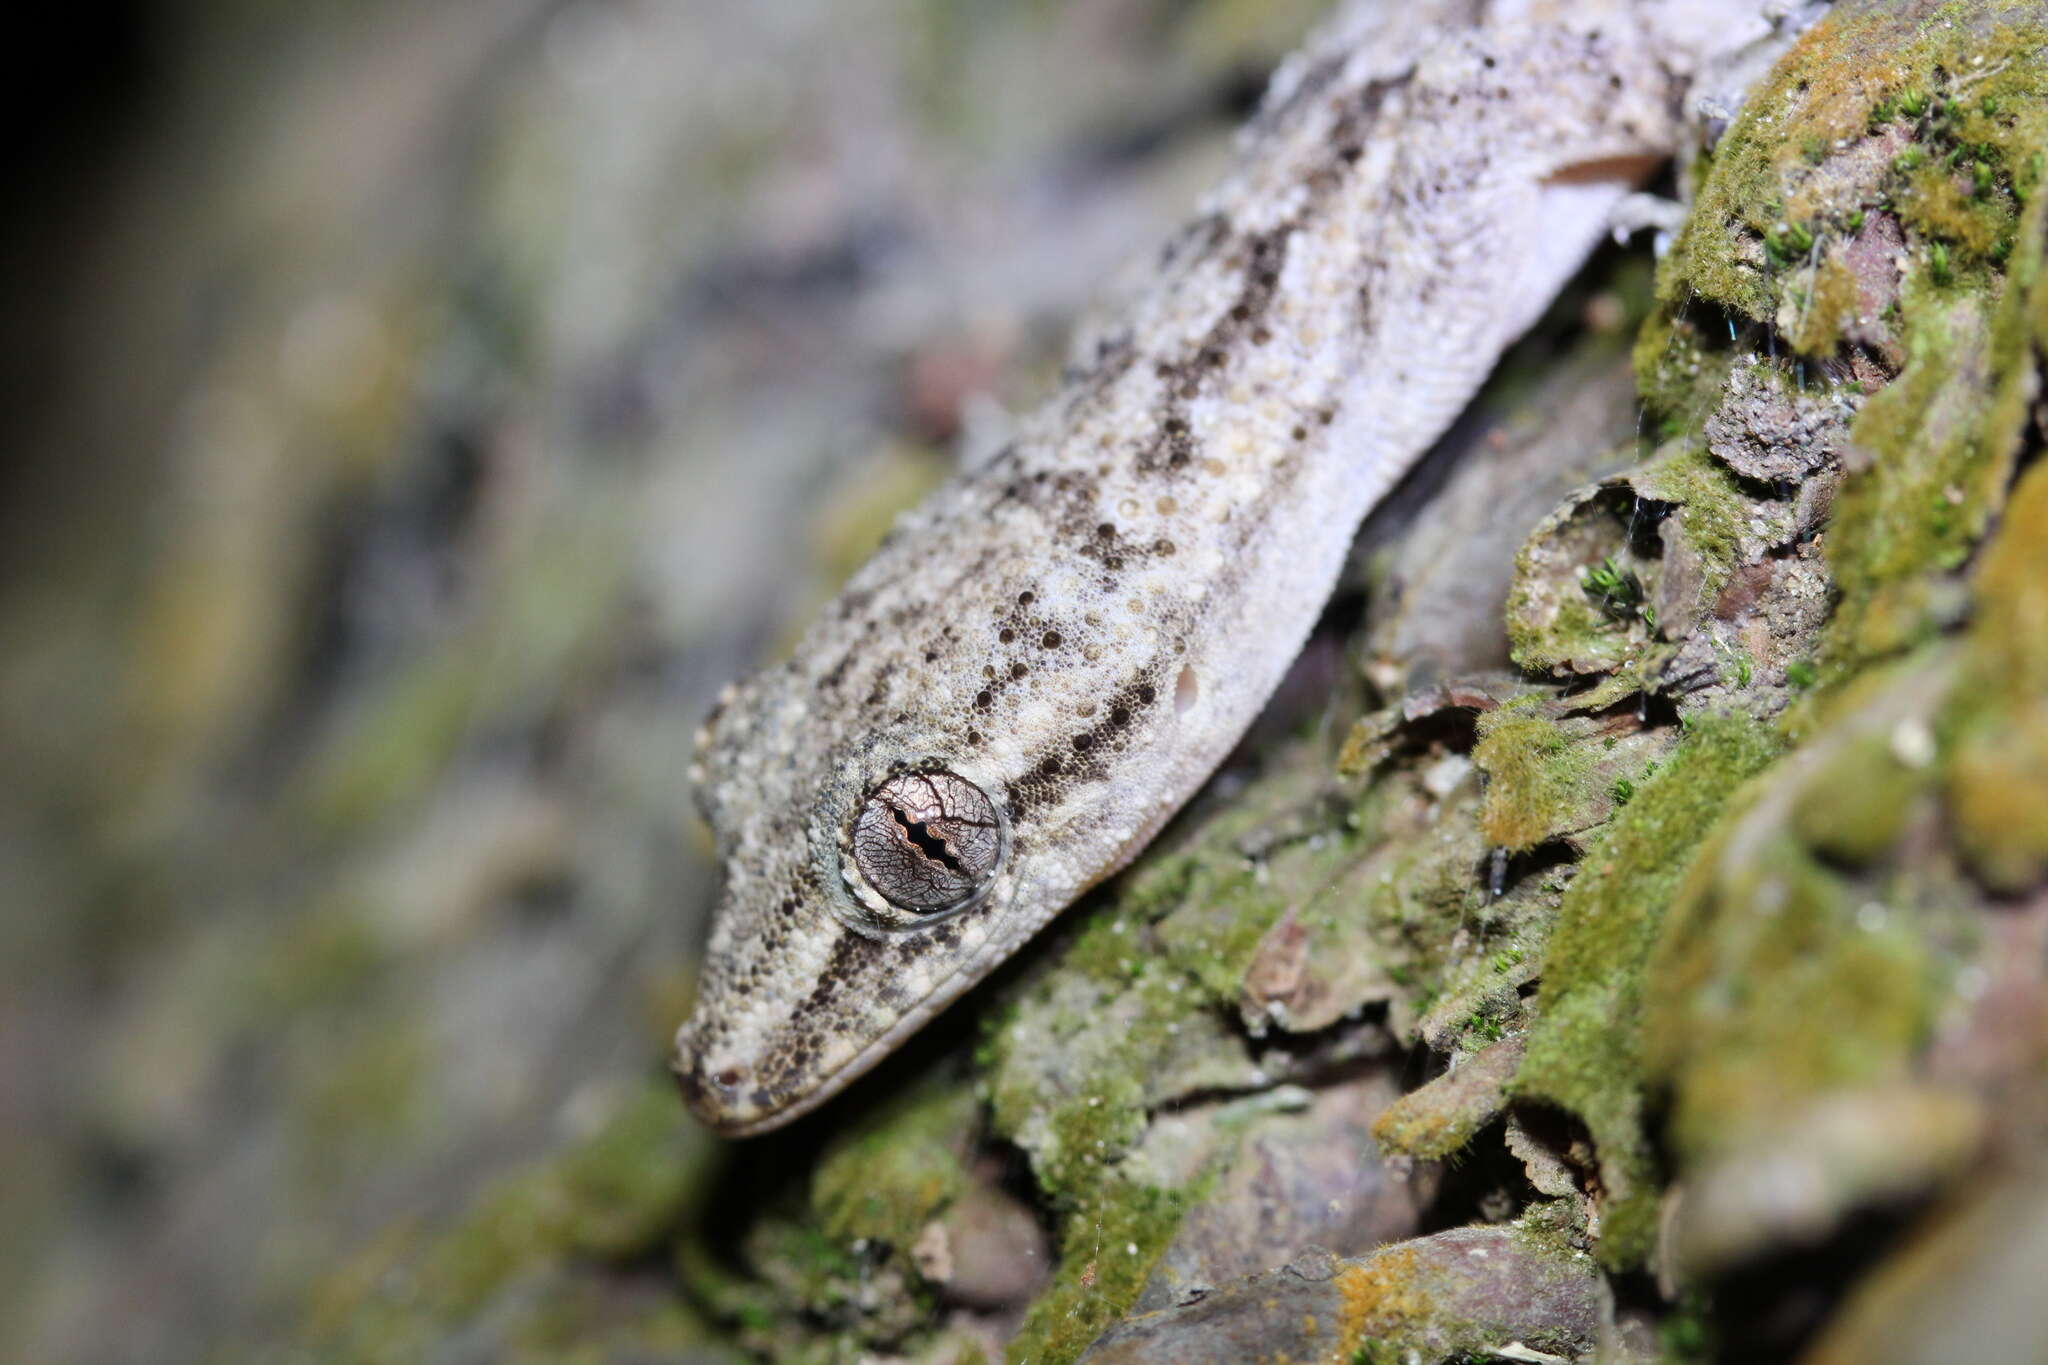 Image of Antilles Leaf-toed Gecko